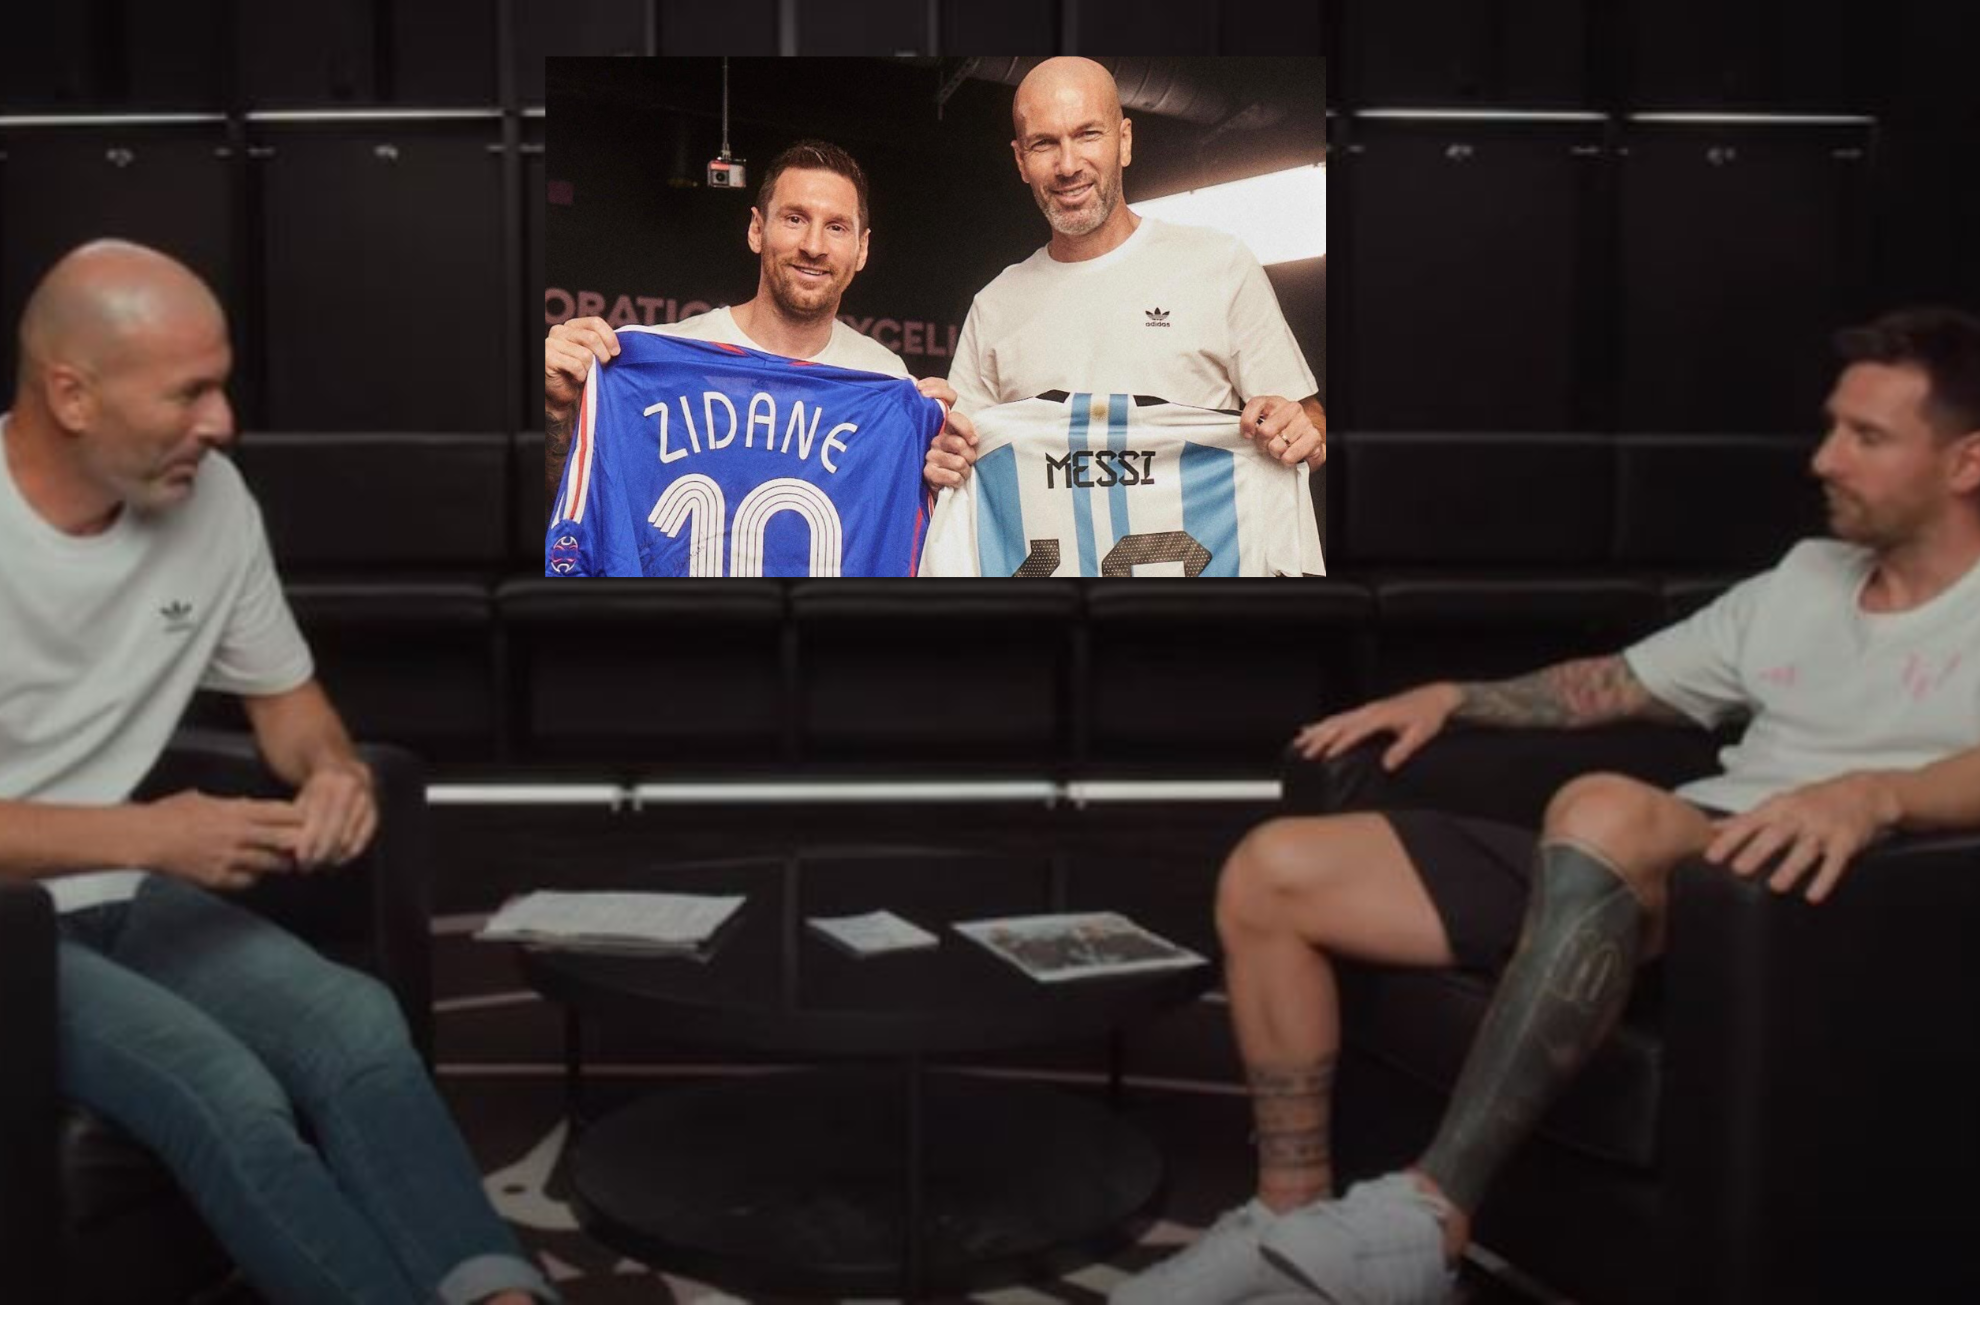 Zidane y Messi, de charla futbolera: "Todos queramos ser Maradona y ninguno lleg a serlo"